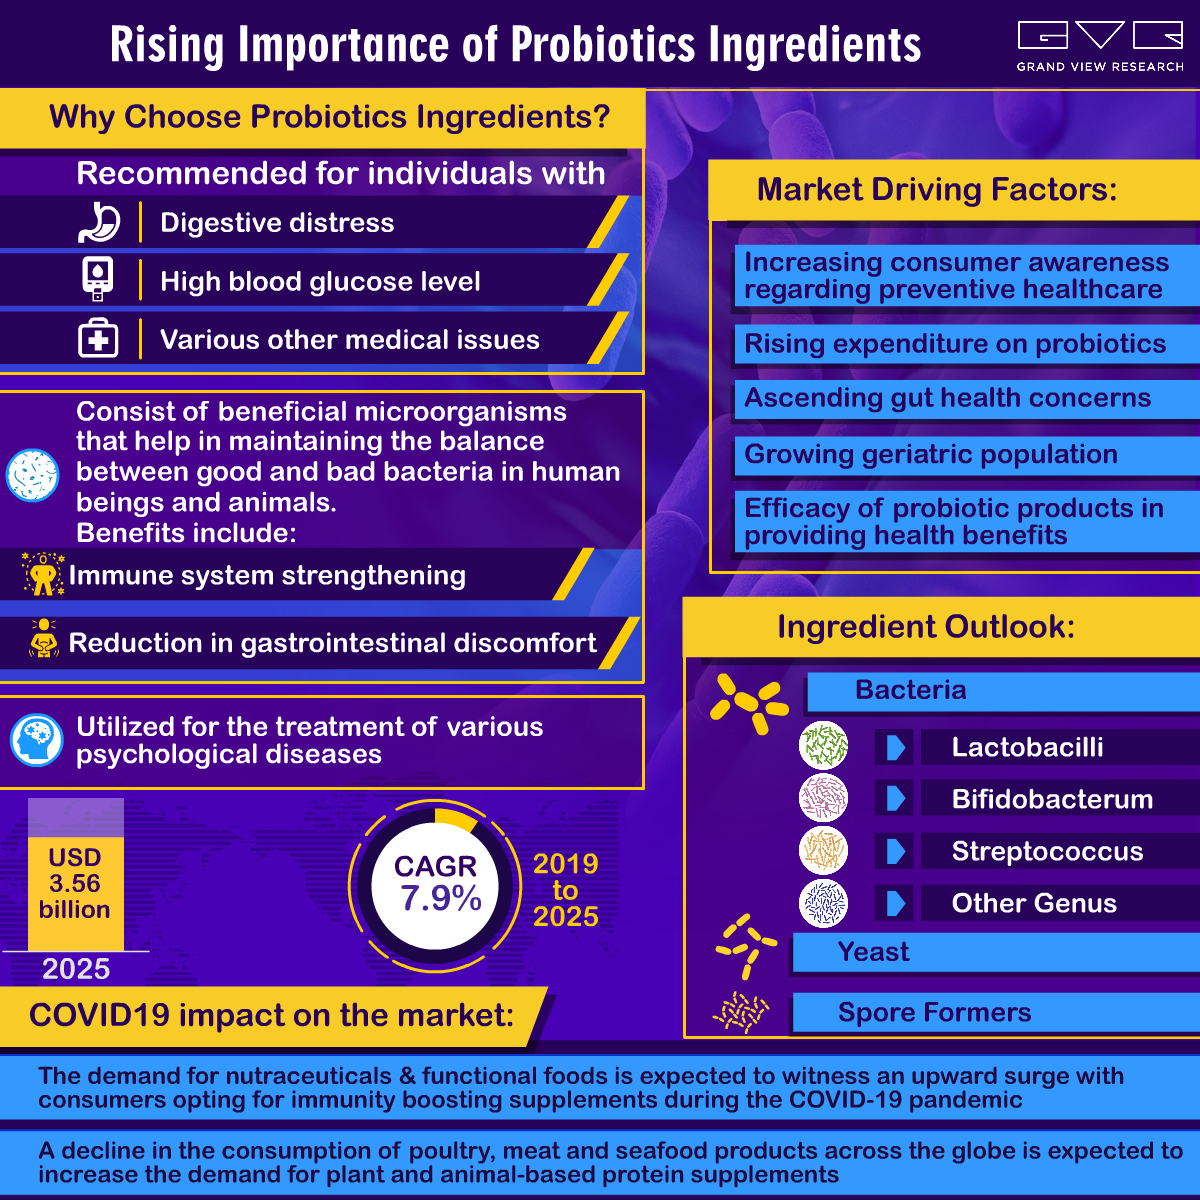 Probiotics Ingredients Market 